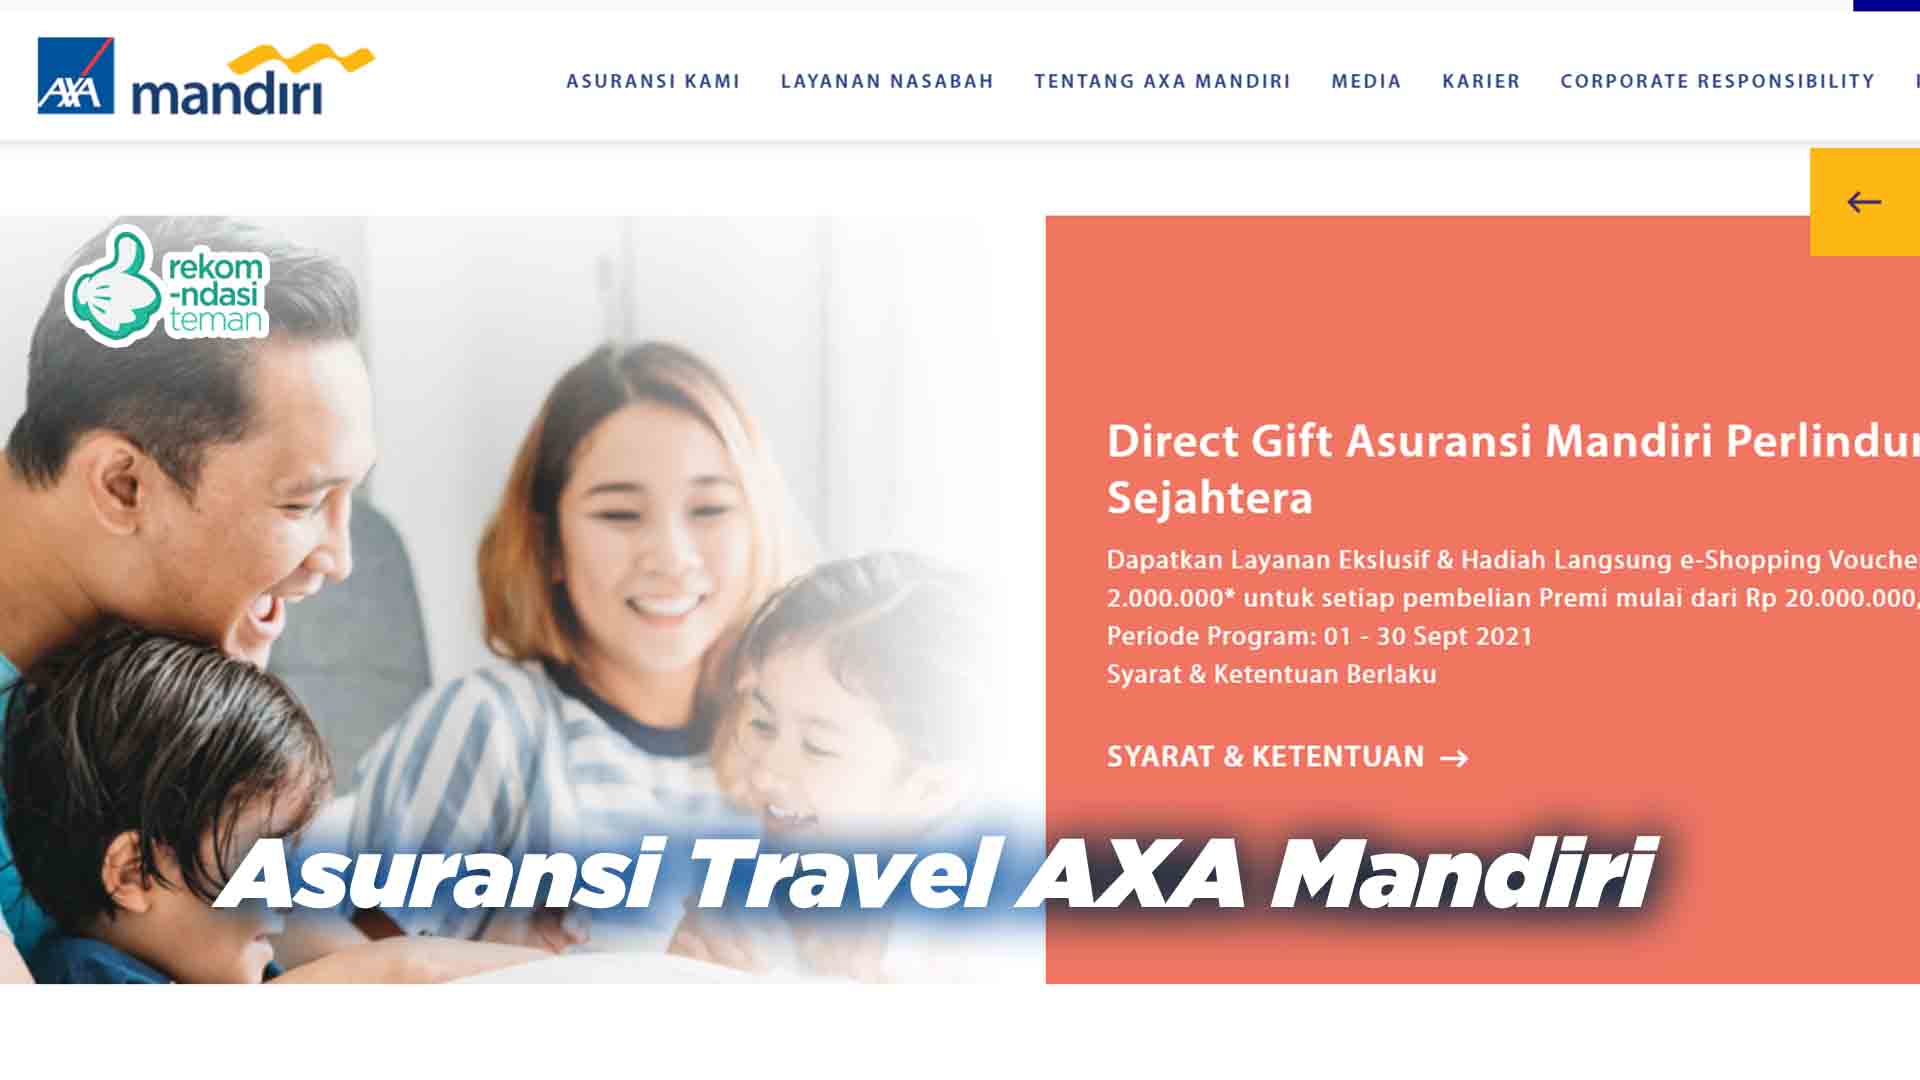 Asuransi Travel AXA Mandiri